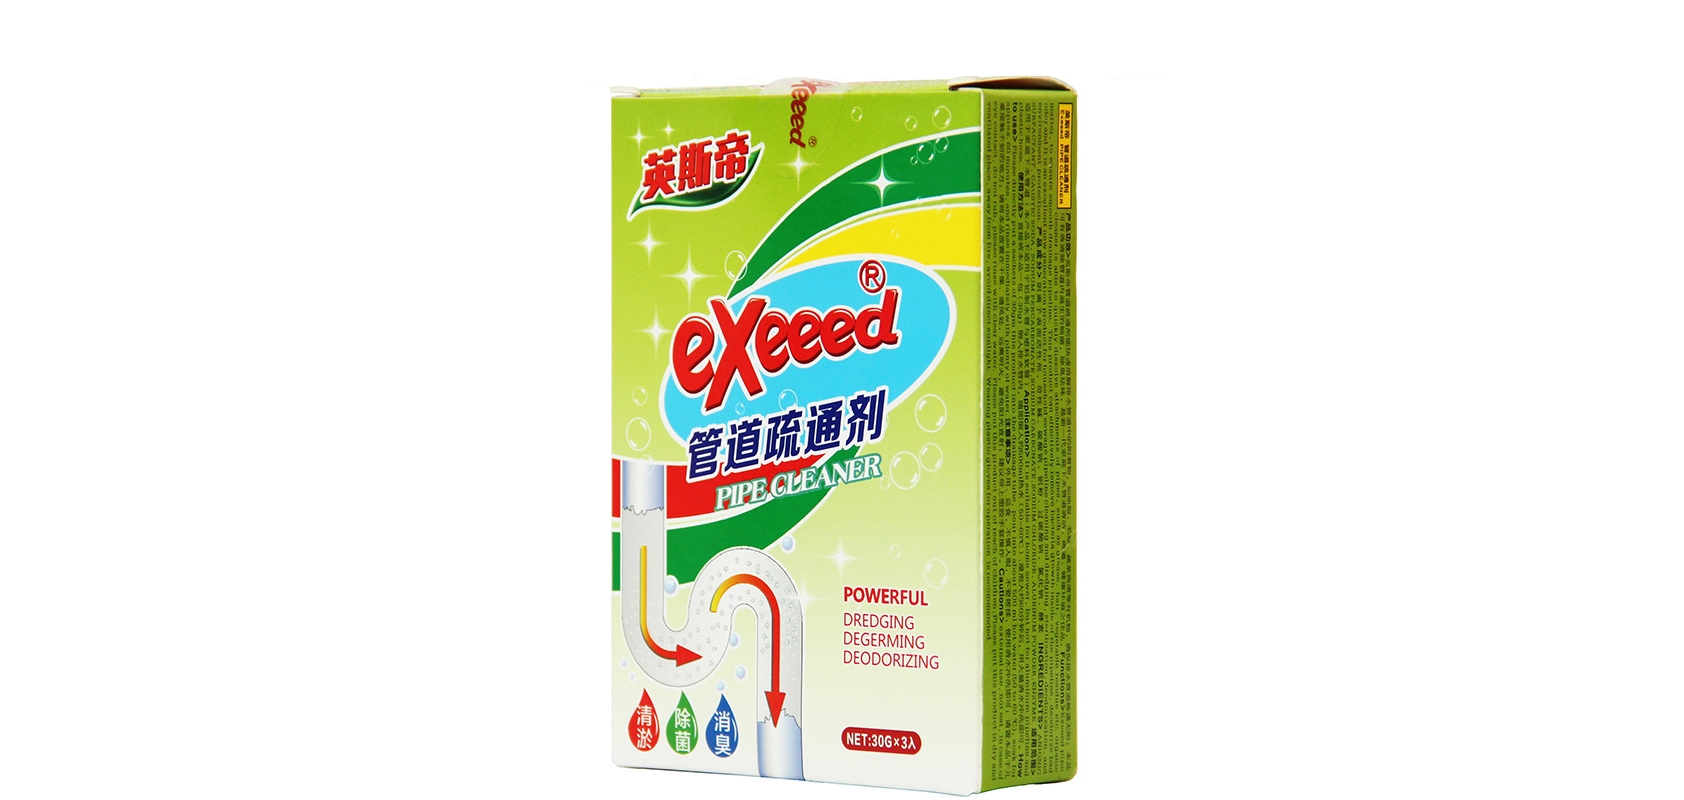 exeeed是什么牌子_exeeed品牌怎么样?